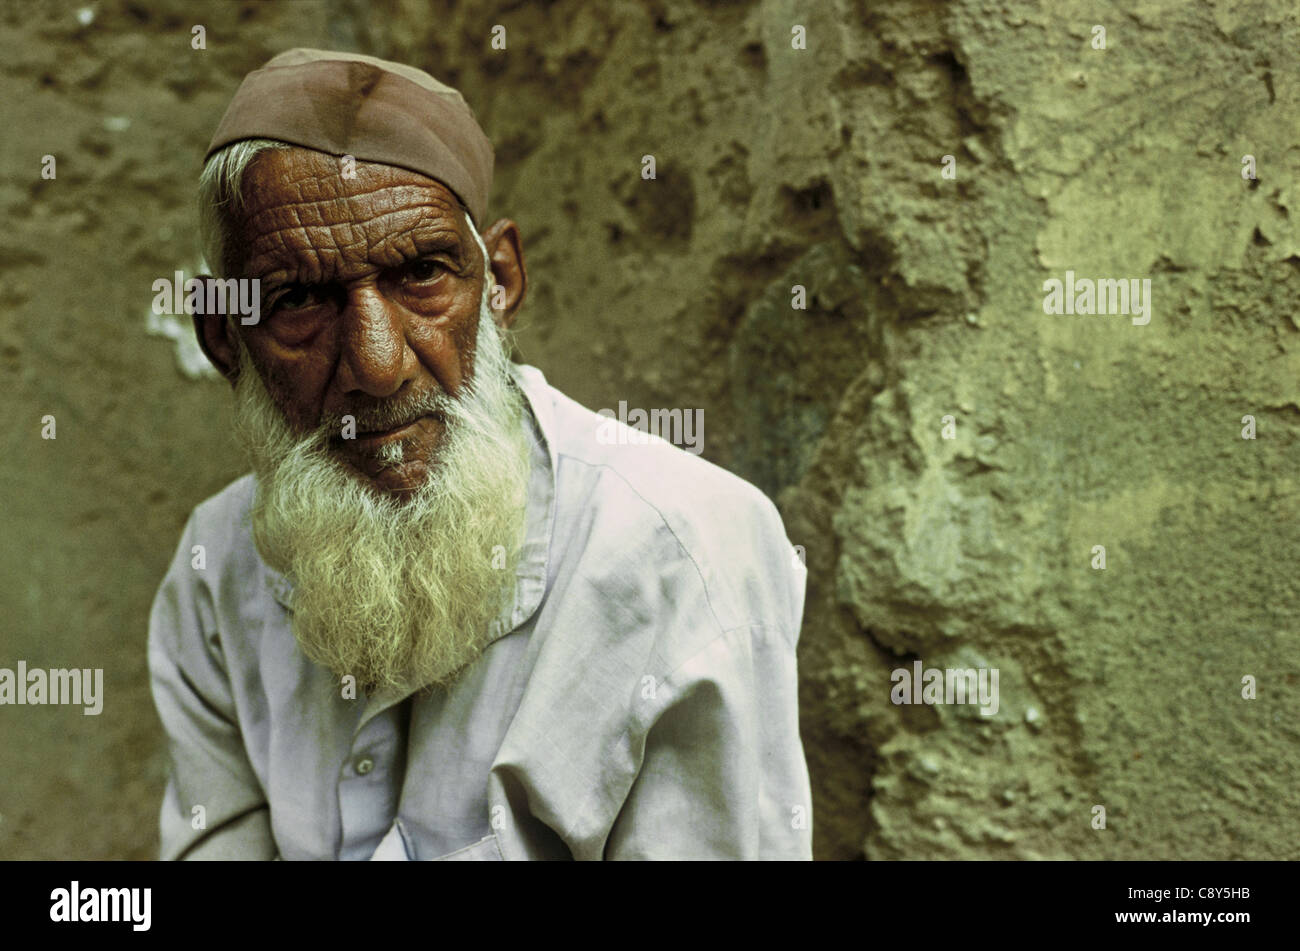 Muslim pilgrim with a Gandhi cap ( India) Stock Photo